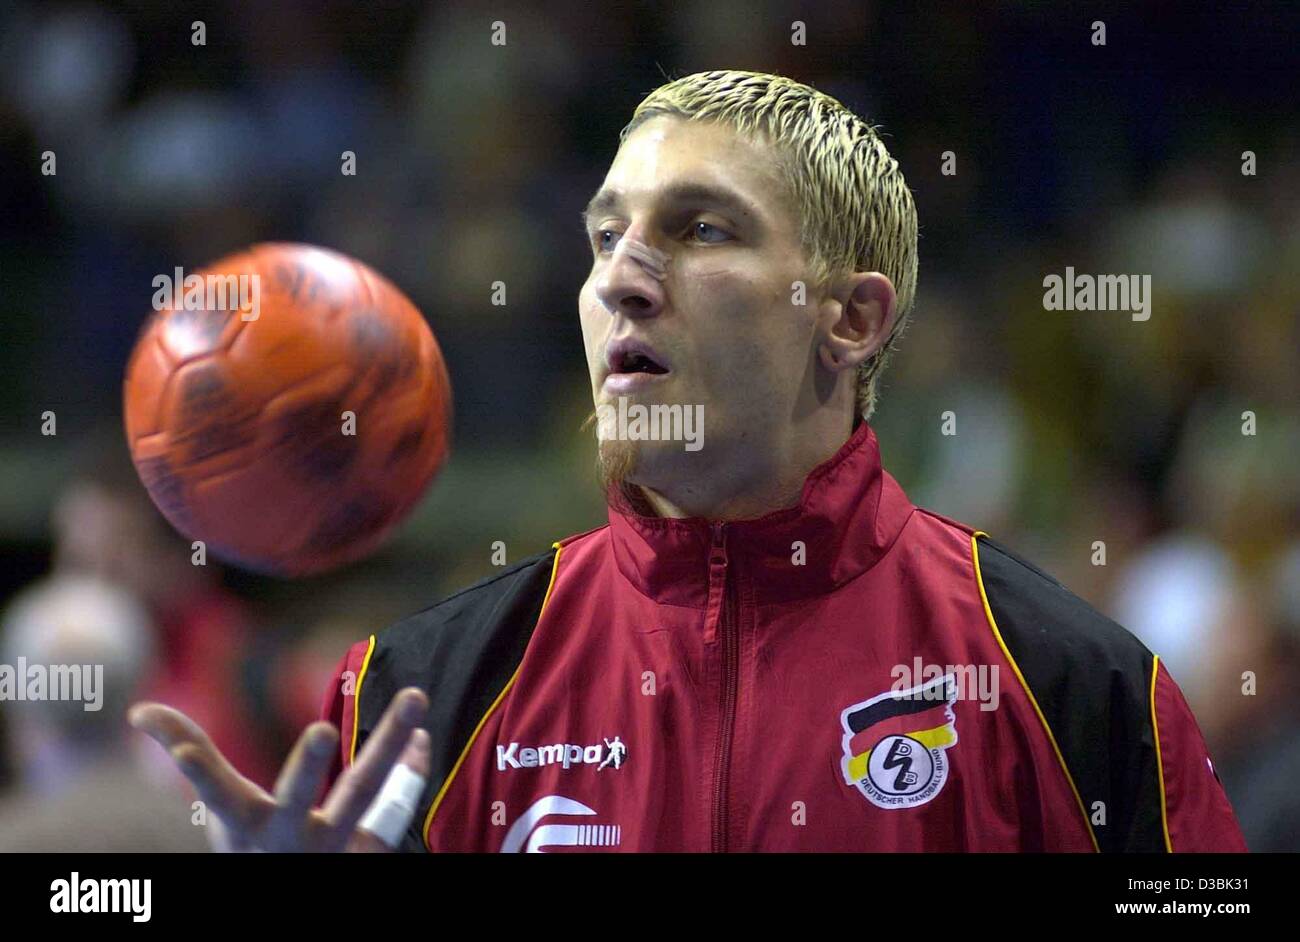 (Dpa) - El alemán en el equipo nacional handballer Stefan Kretzschmarspins una bola en su mano, listo para jugar durante el juego de balonmano Alemania contra Islandia en Berlín, Alemania, el 22 de marzo de 2003. Alemania ganó 39-34. Kretzschmar logrado contribuir cinco goles a la victoria. Foto de stock